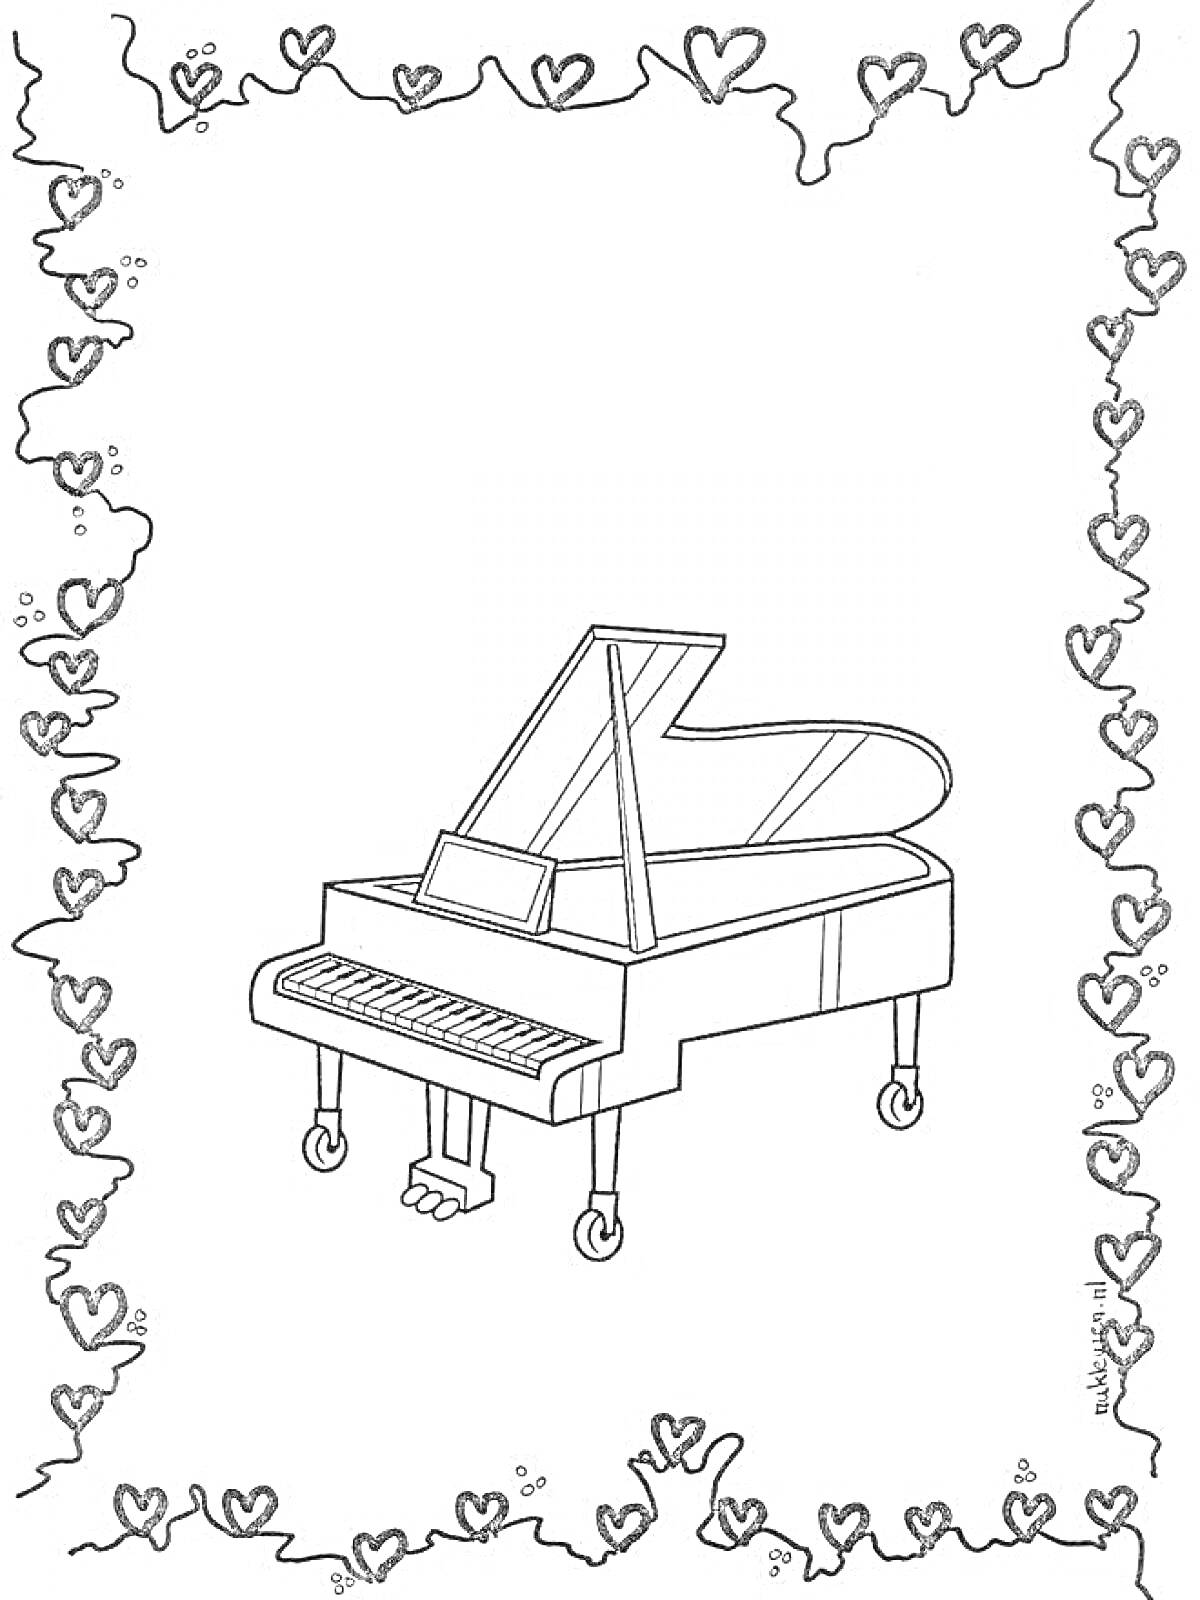 концертный рояль в рамке из сердечек